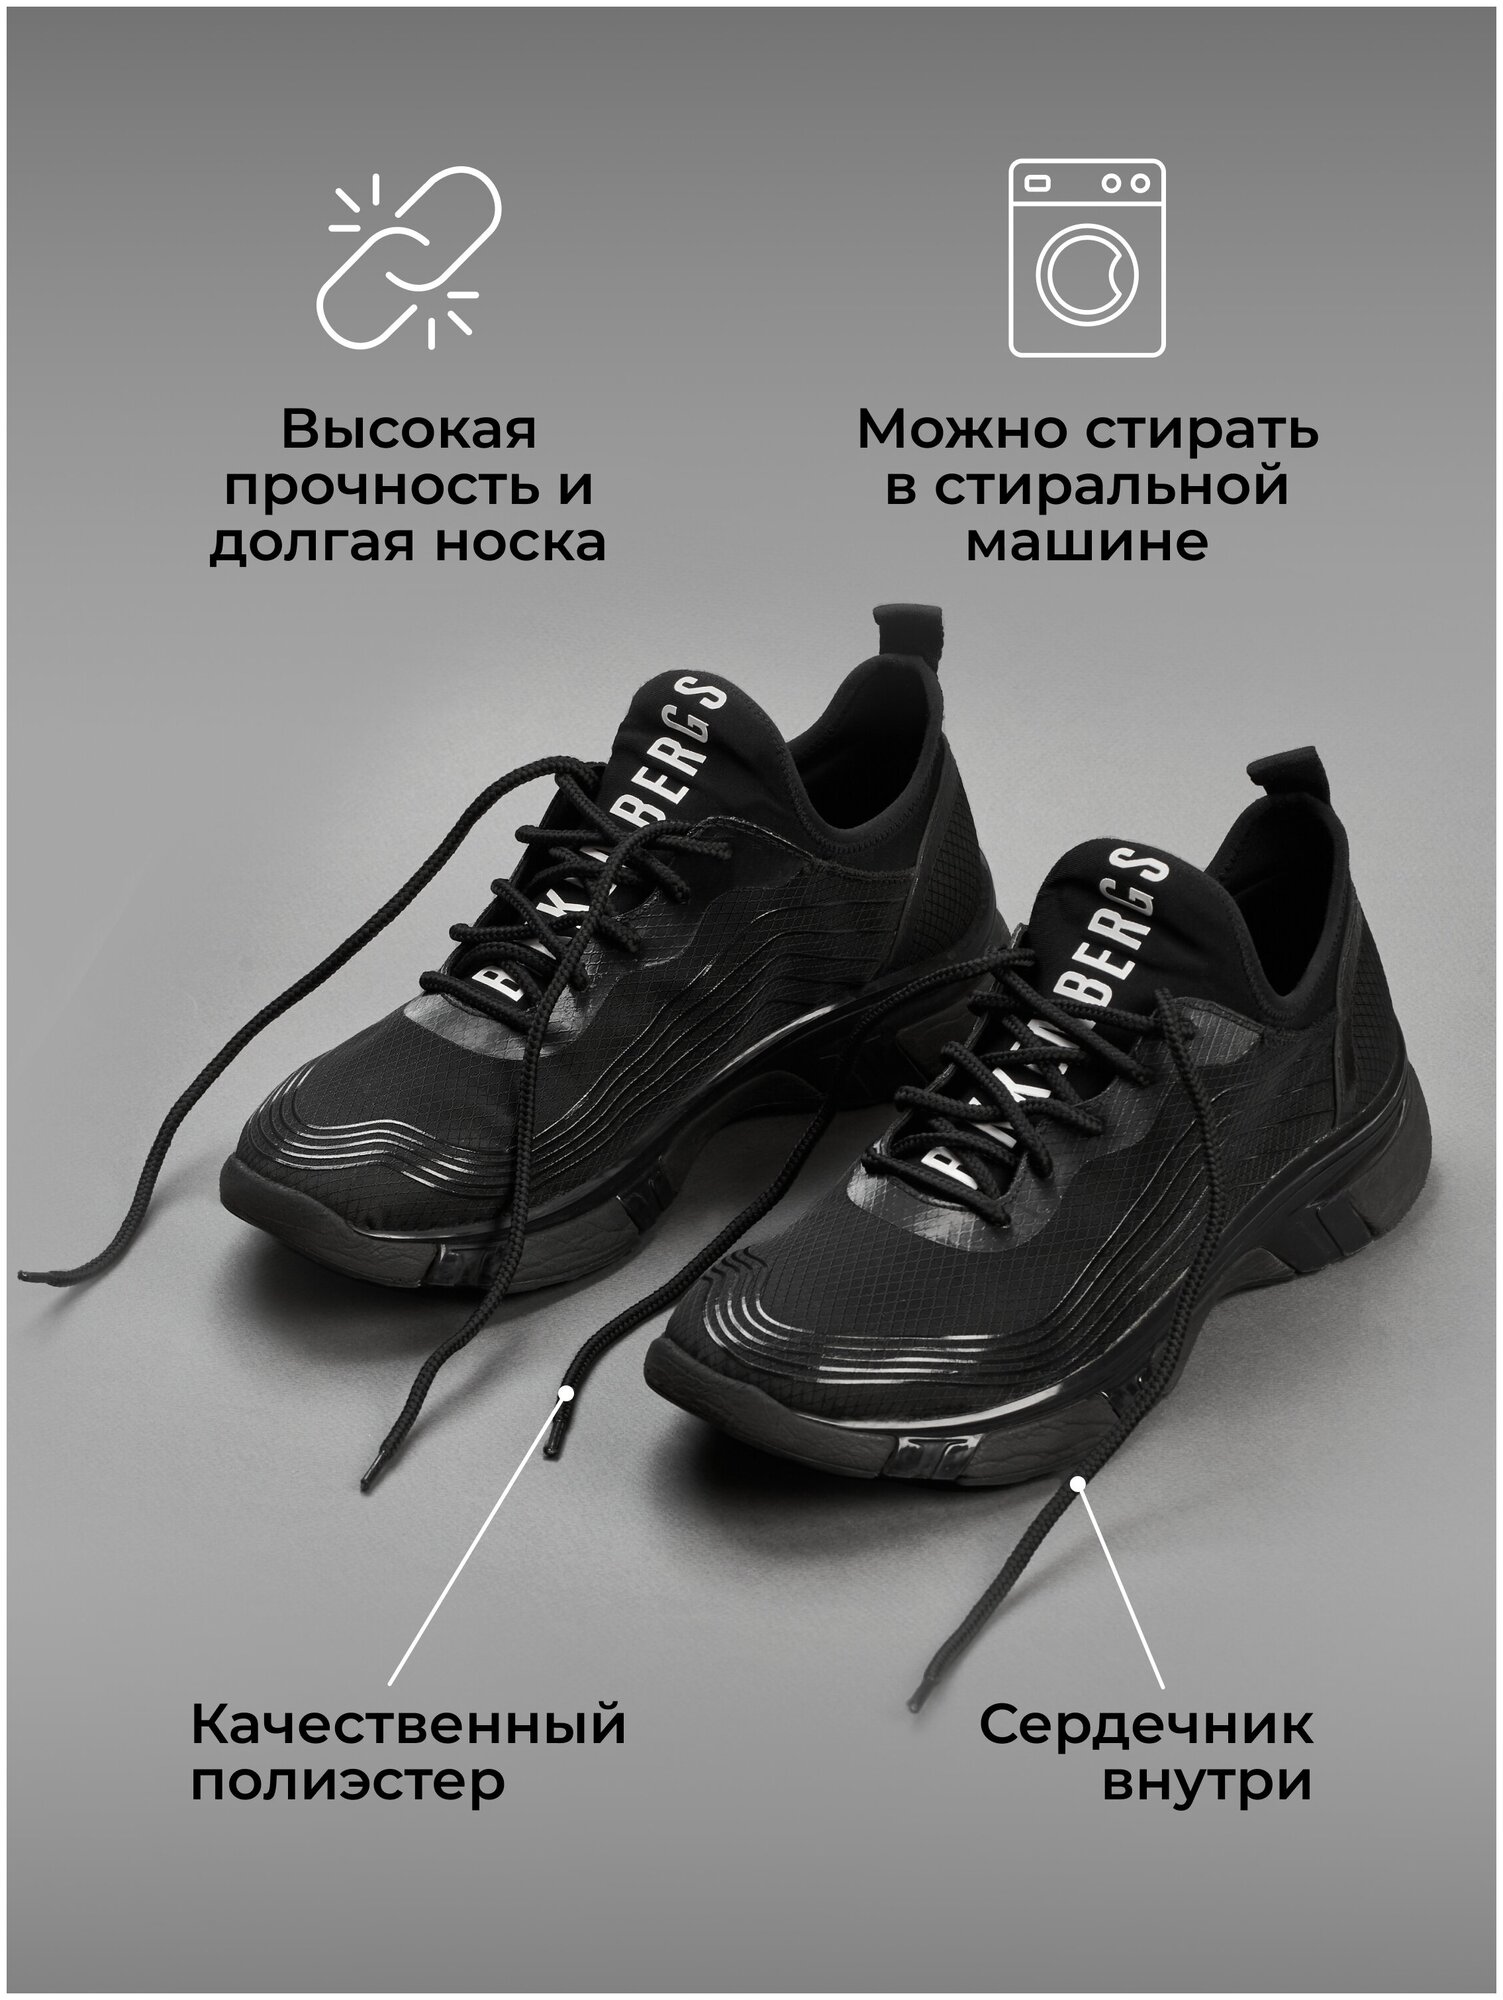 Шнурки 120 см чёрные круглые прочные, длинные, толстые для обуви, кроссовок, ботинок, кед. Могут заменить: 100, 110, 130, 140 см. P.C FILIGREE